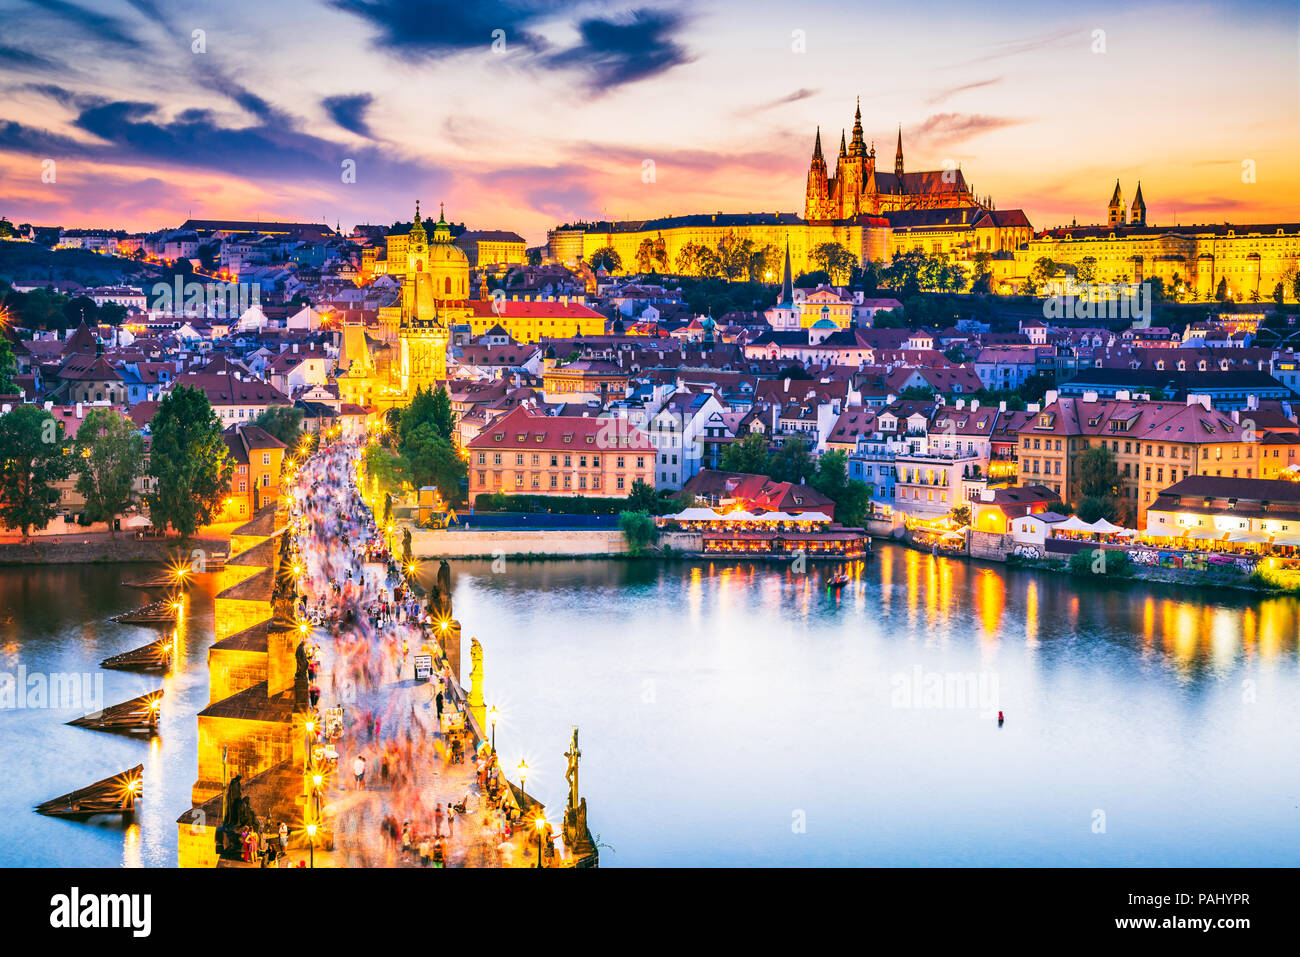 Praga, República Checa. Puente de Carlos y el Castillo de Praga (Hrad) con la Catedral de San Vito, Bohemia hito en Praha. Foto de stock